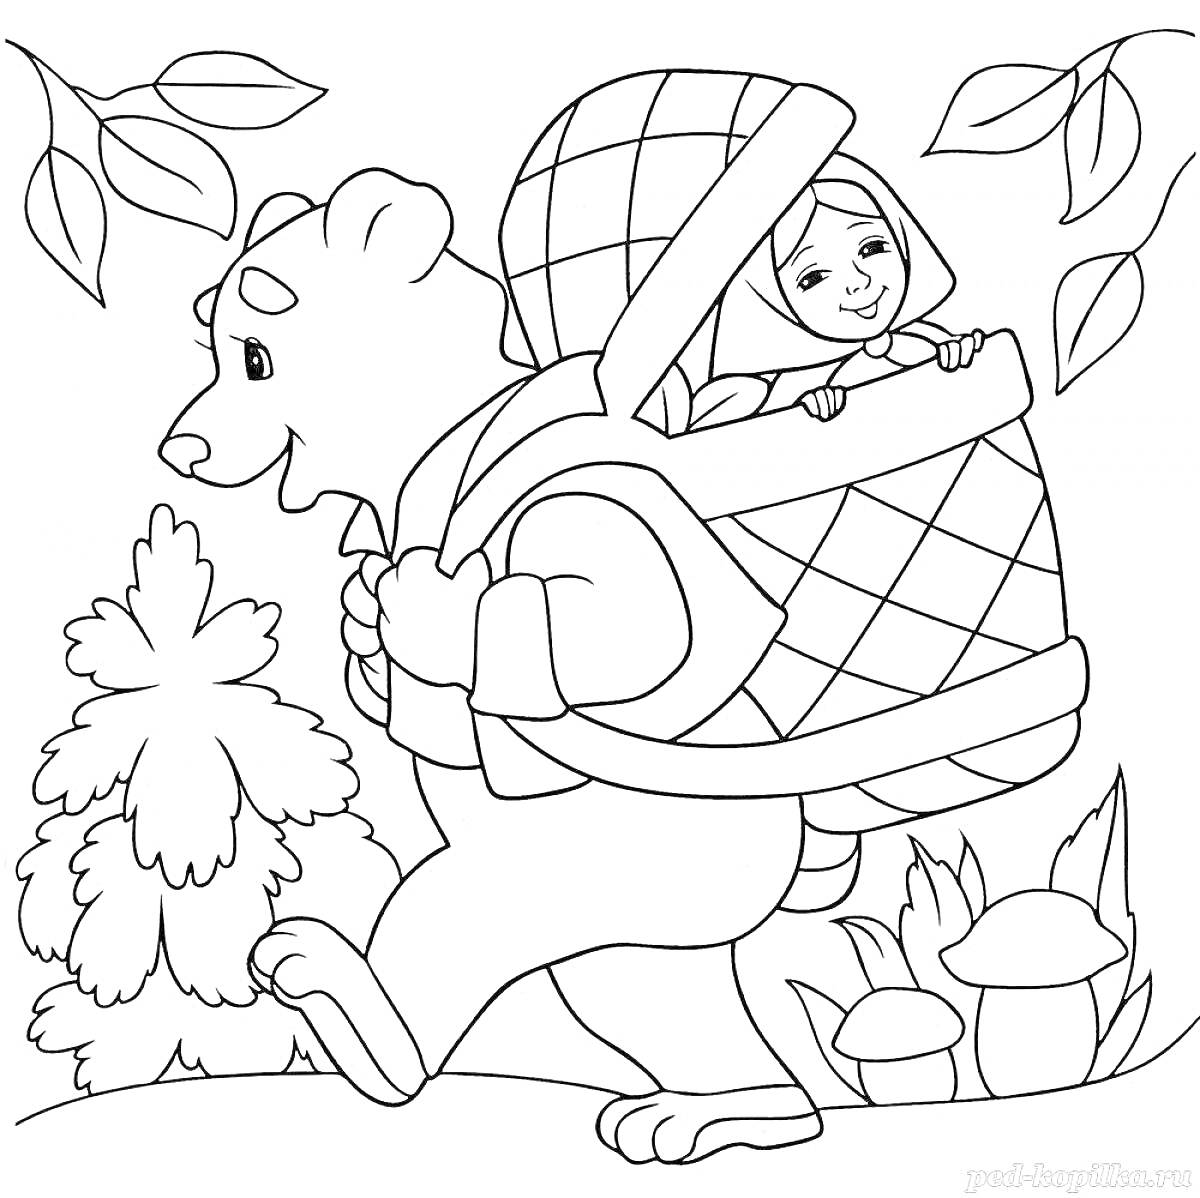 Раскраска Медведь несет корзину с девушкой, на заднем плане елочка, грибы и листья